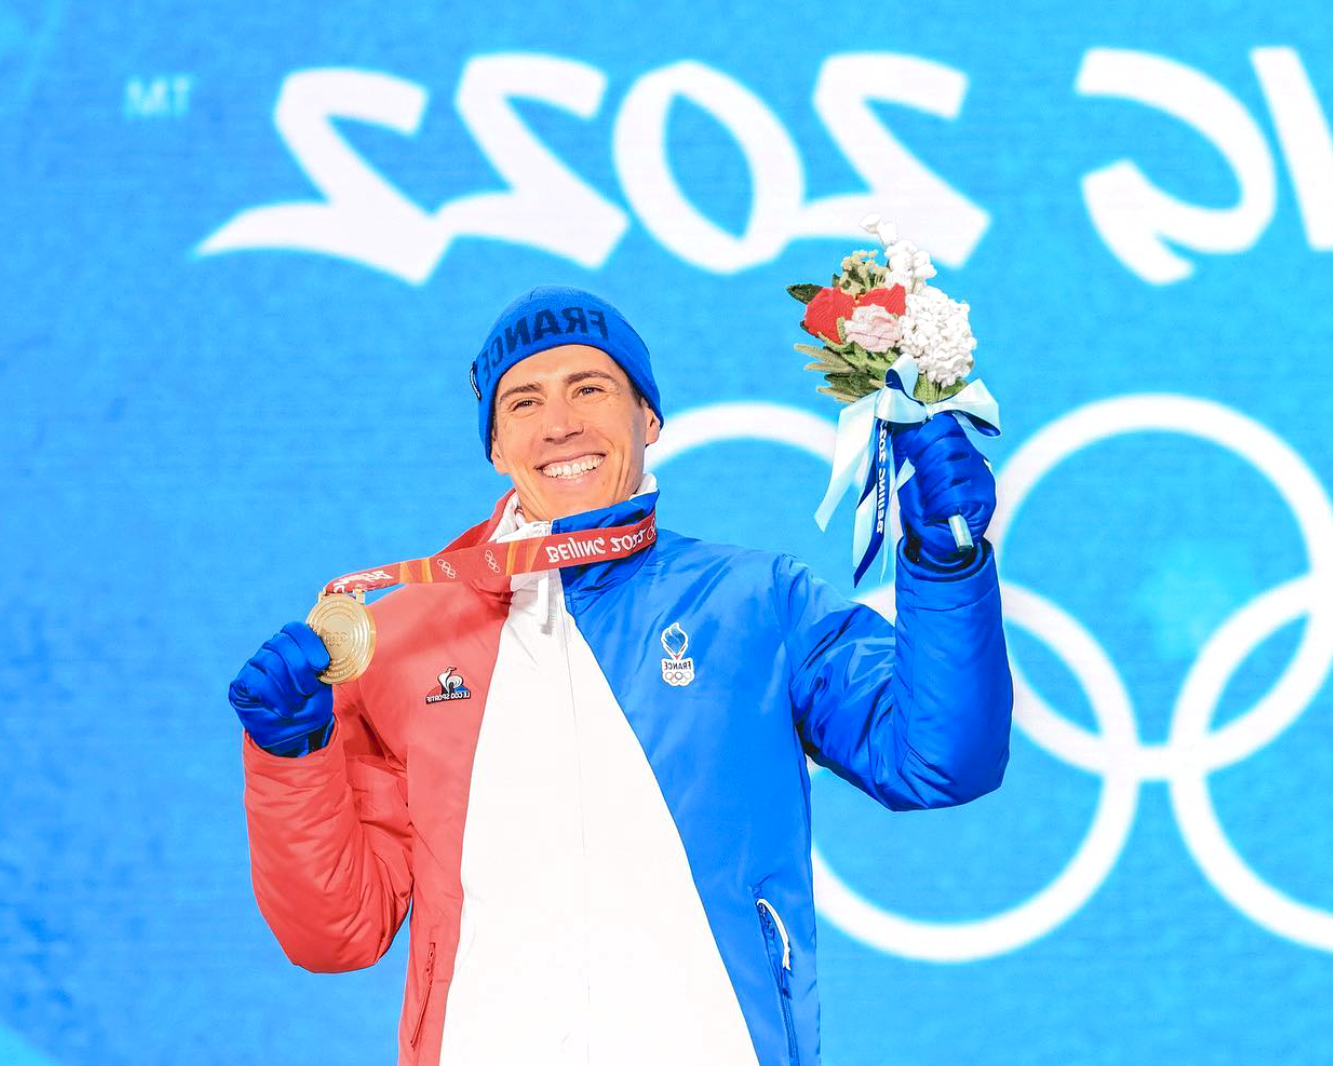 Jeux Olympiques de Pékin 2022 - Sponsors et primes du biathlète français Quentin Fillon Maillet